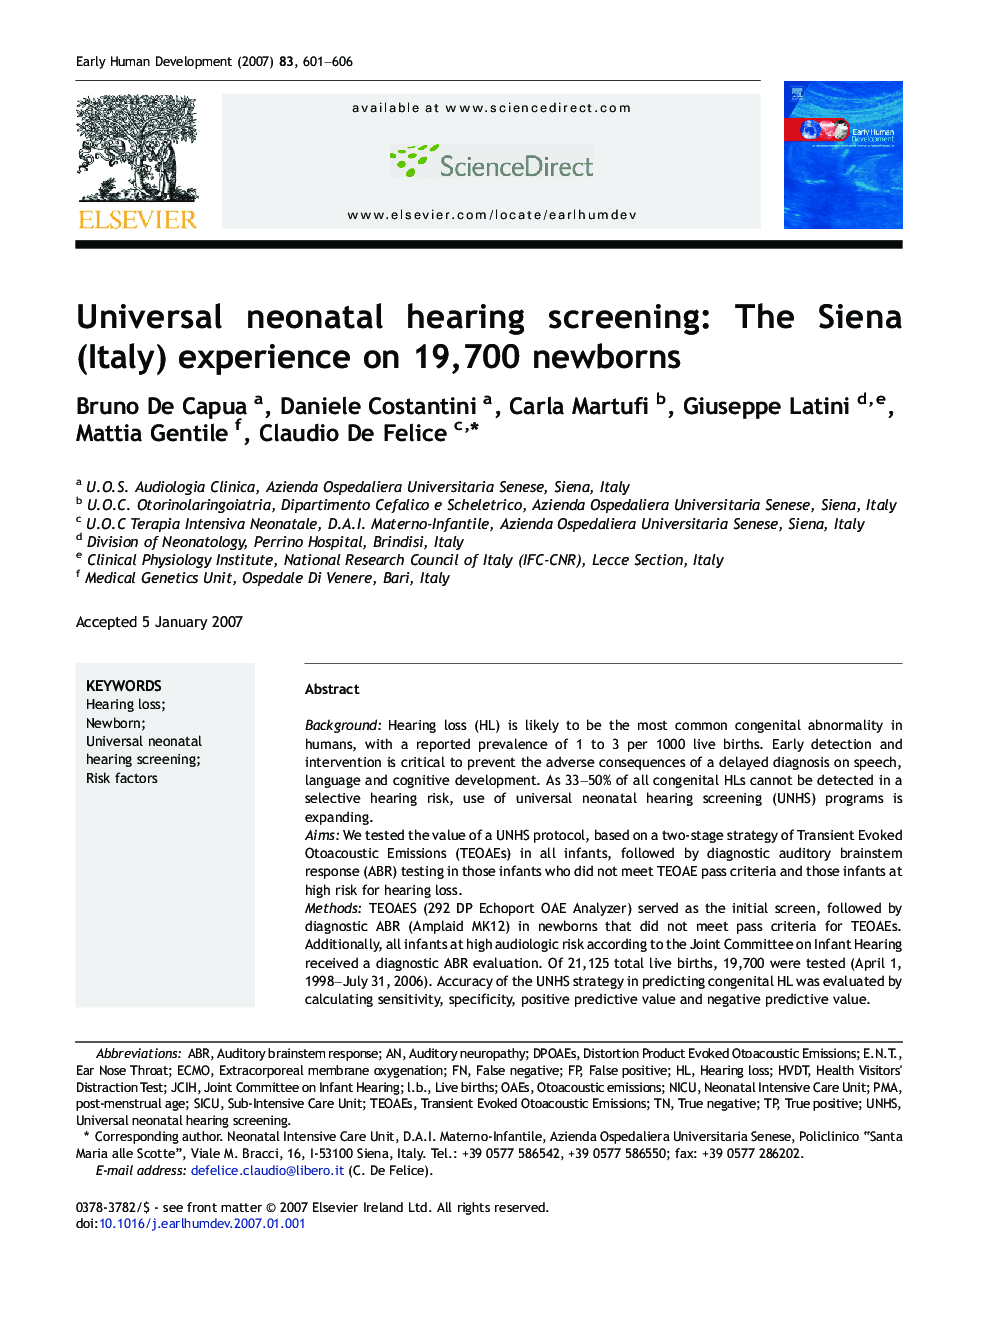 Universal neonatal hearing screening: The Siena (Italy) experience on 19,700 newborns